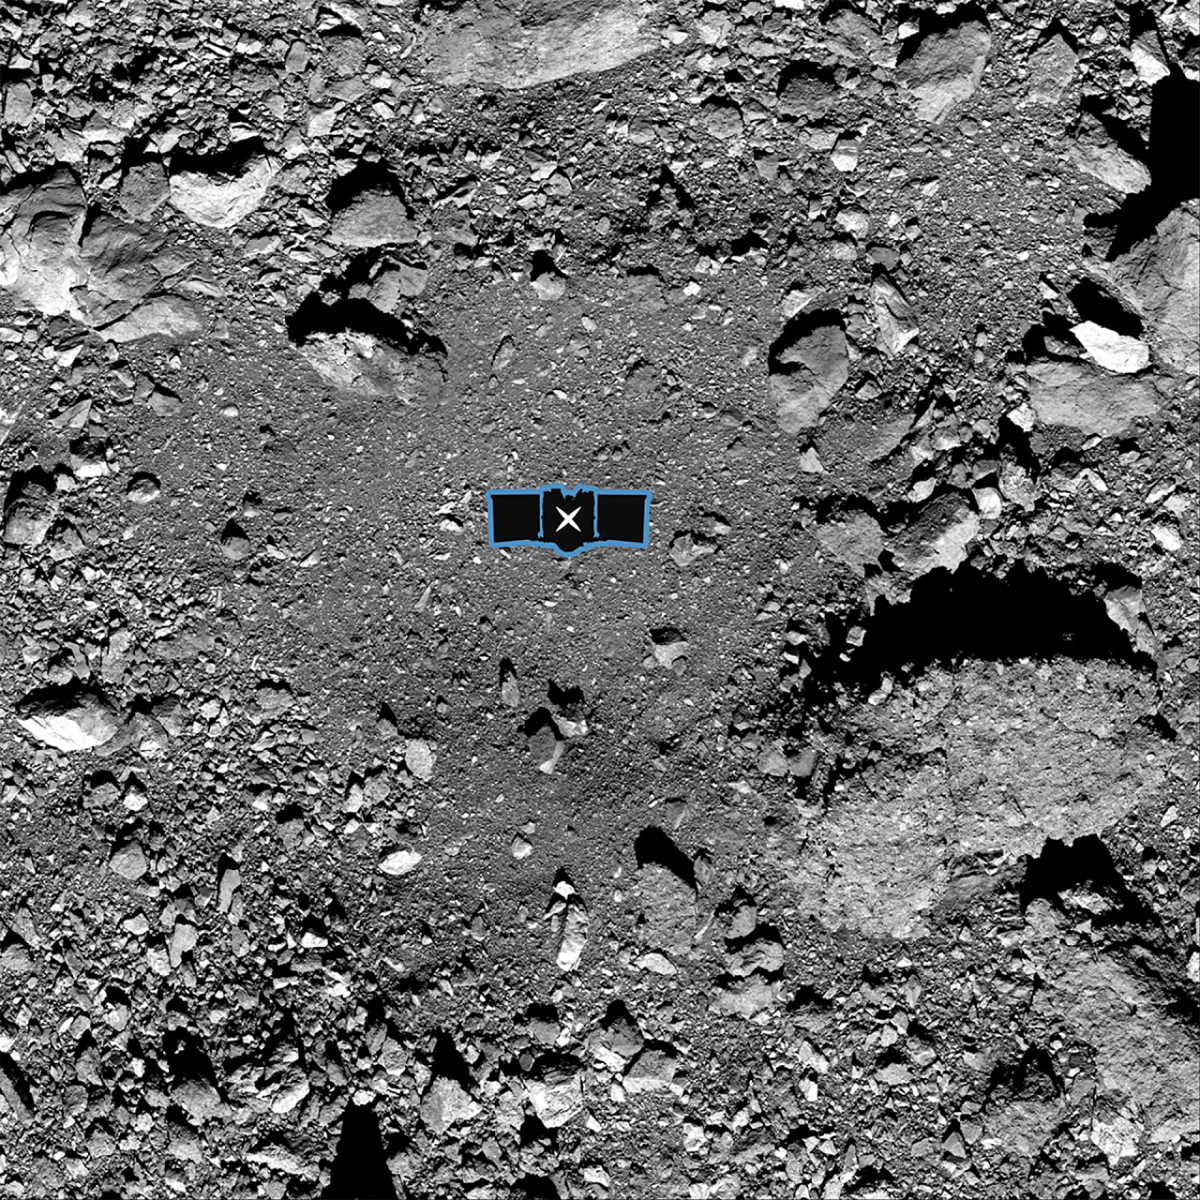 Científicos canarios asistirán en la misión de la NASA🚀👩‍🚀 que tomará las primeras muestras del asteroide ☄ Bennu